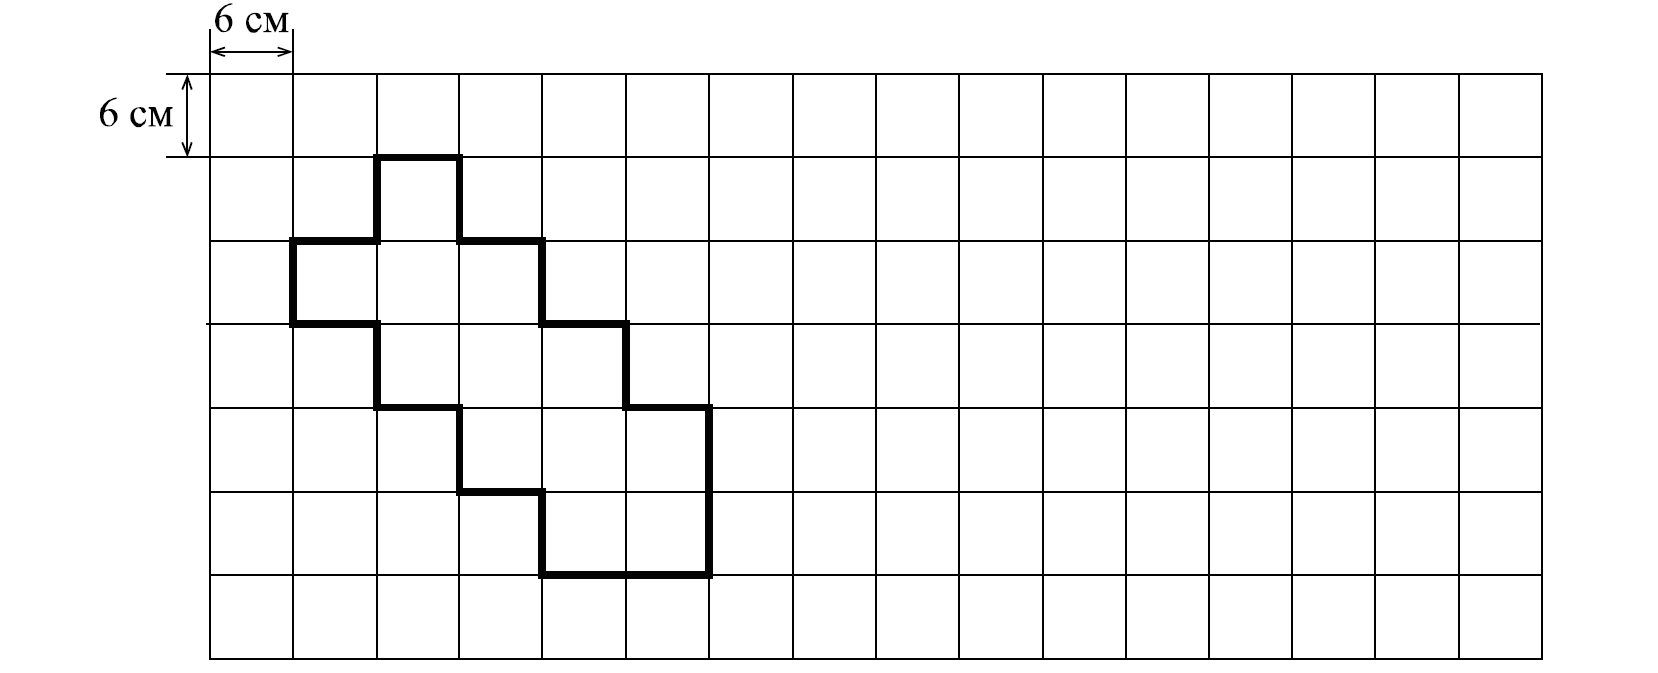 10005 060917 10048 3. На рисунке дано поле расчерченное на квадраты. Прямоугольники расчерченные на квадратные см. На рисунке дано поле расчерченное на квадраты со стороной 8. На рисунке дано поле расчерченное на квадраты со стороной 6 см.